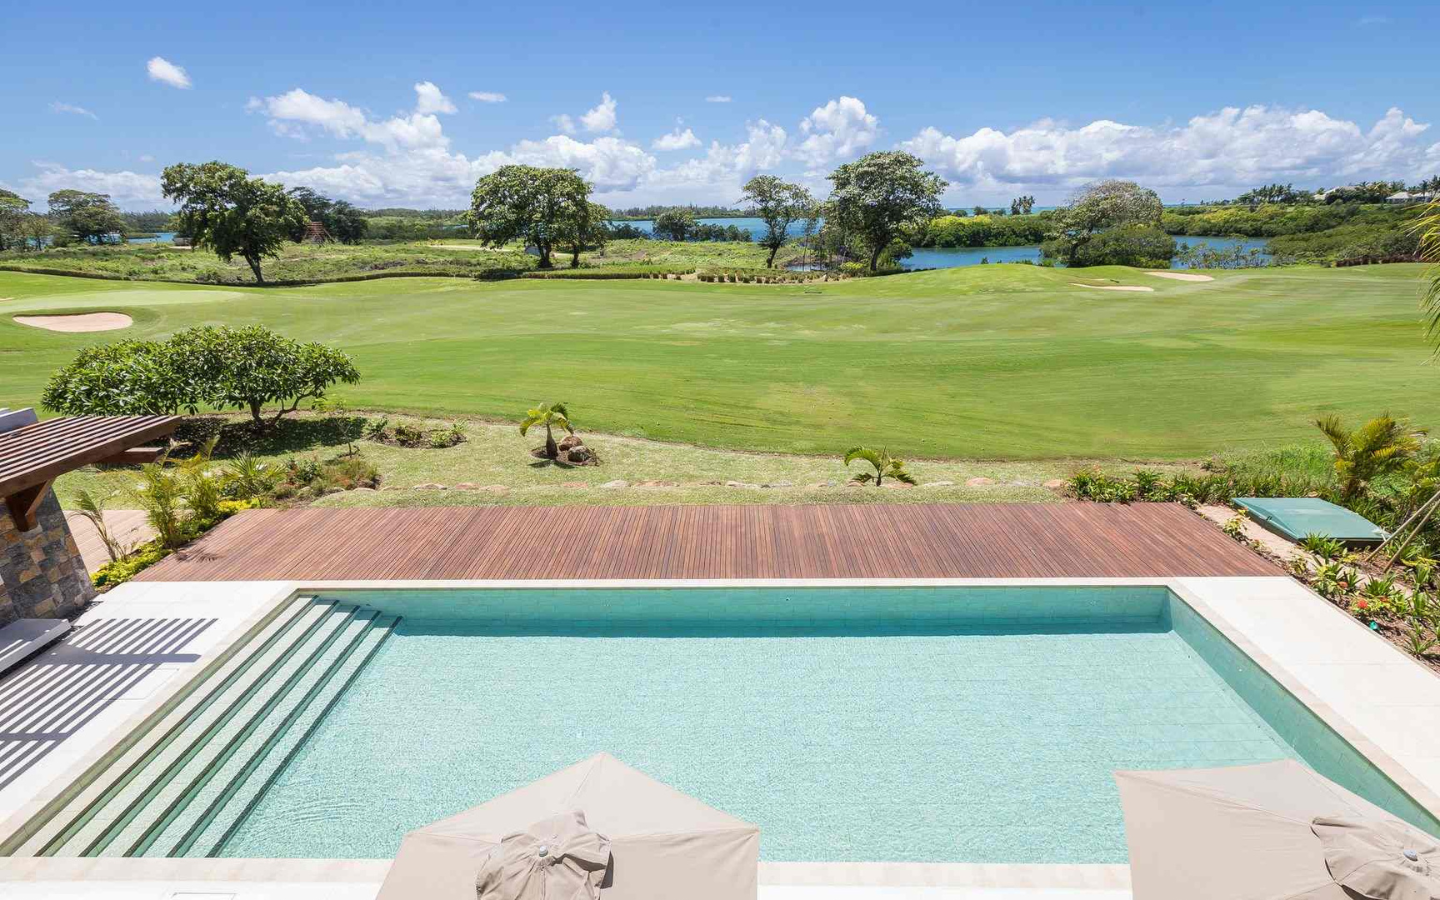 Villa à vendre, 6 chambres à coucher, Piscine, Jardin Spacieux, île Maurice